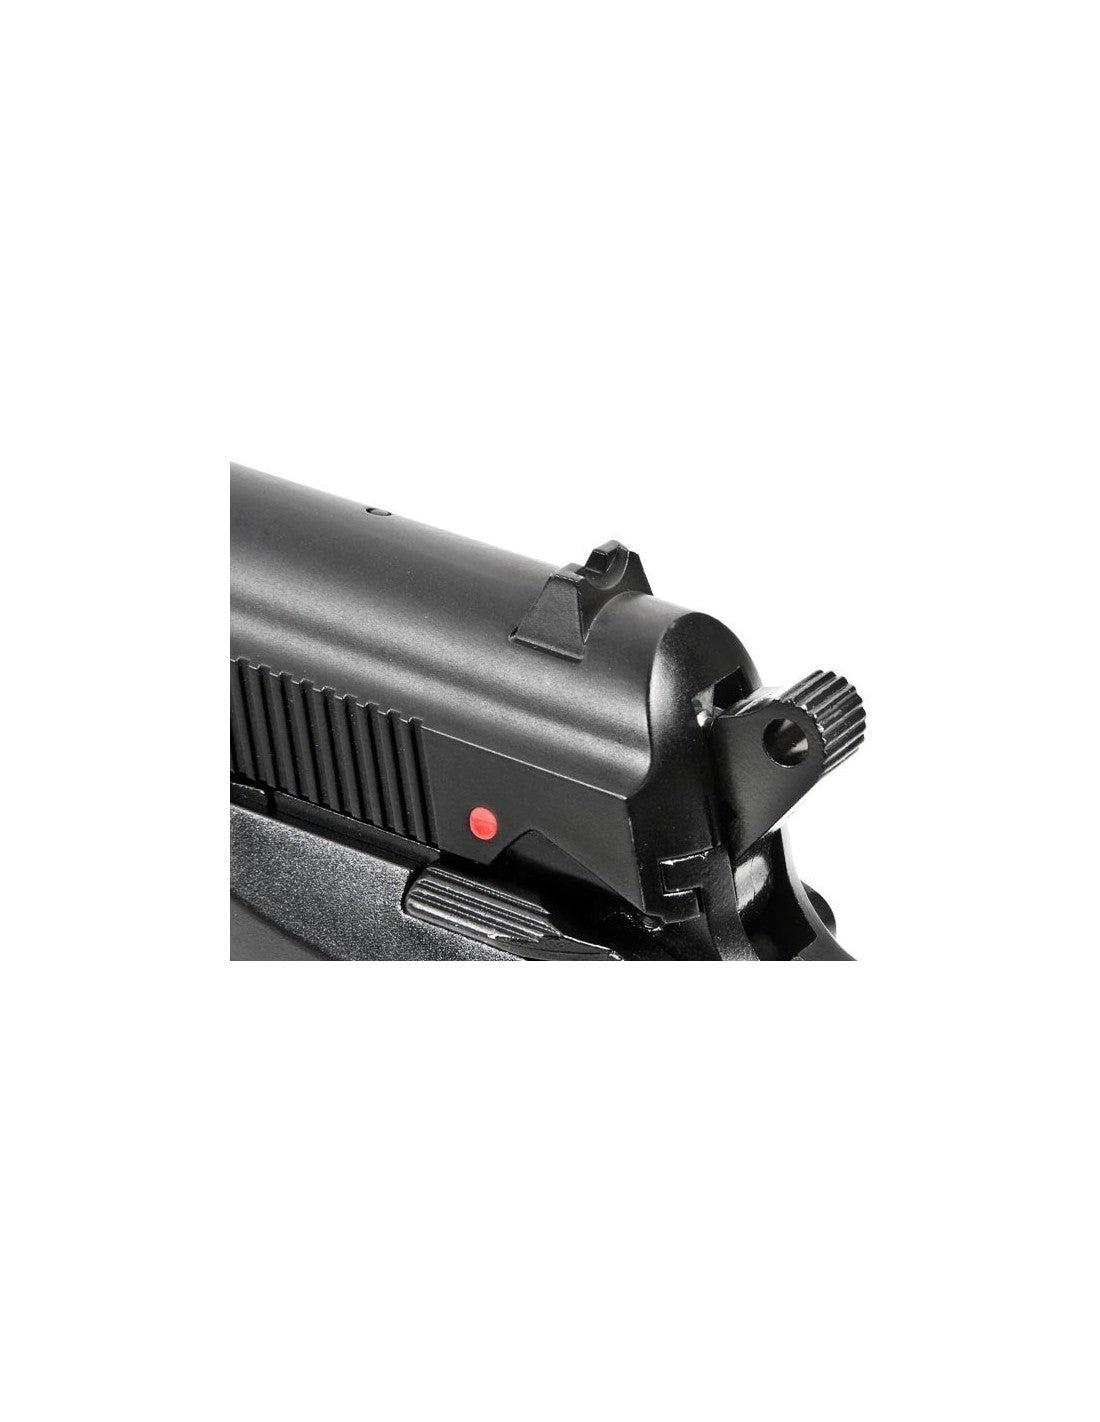 Pistola Beretta M84FS Combo Blowback Full Metal CO2 de Postas Calibre  .177(4.5mm)